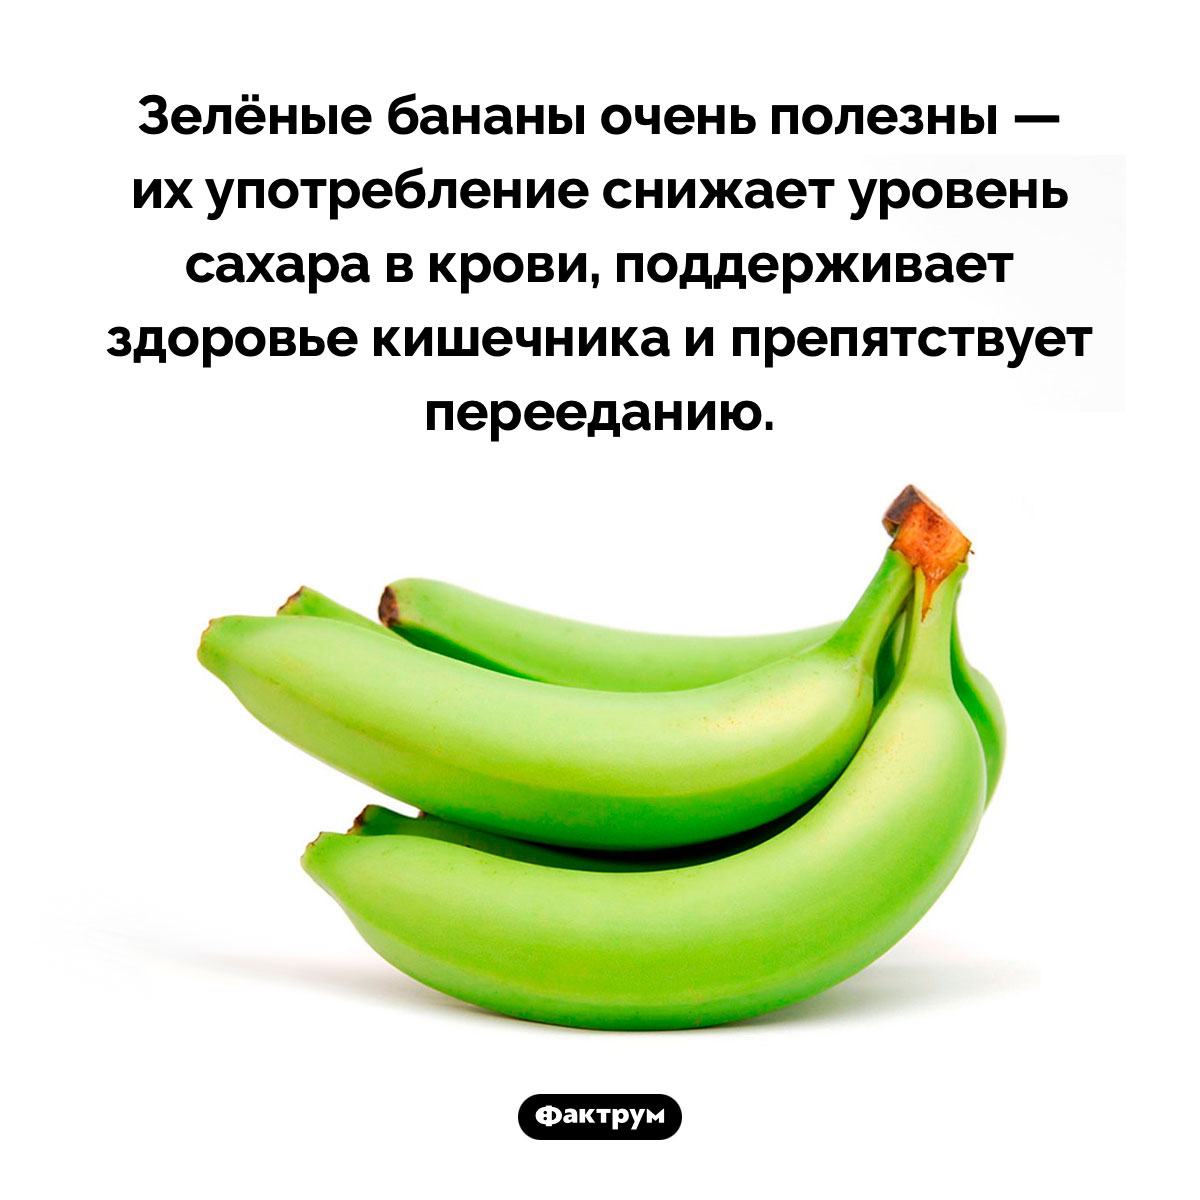 Чем полезны зелёные бананы. Зелёные бананы очень полезны — их употребление снижает уровень сахара в крови, поддерживает здоровье кишечника и препятствует перееданию.